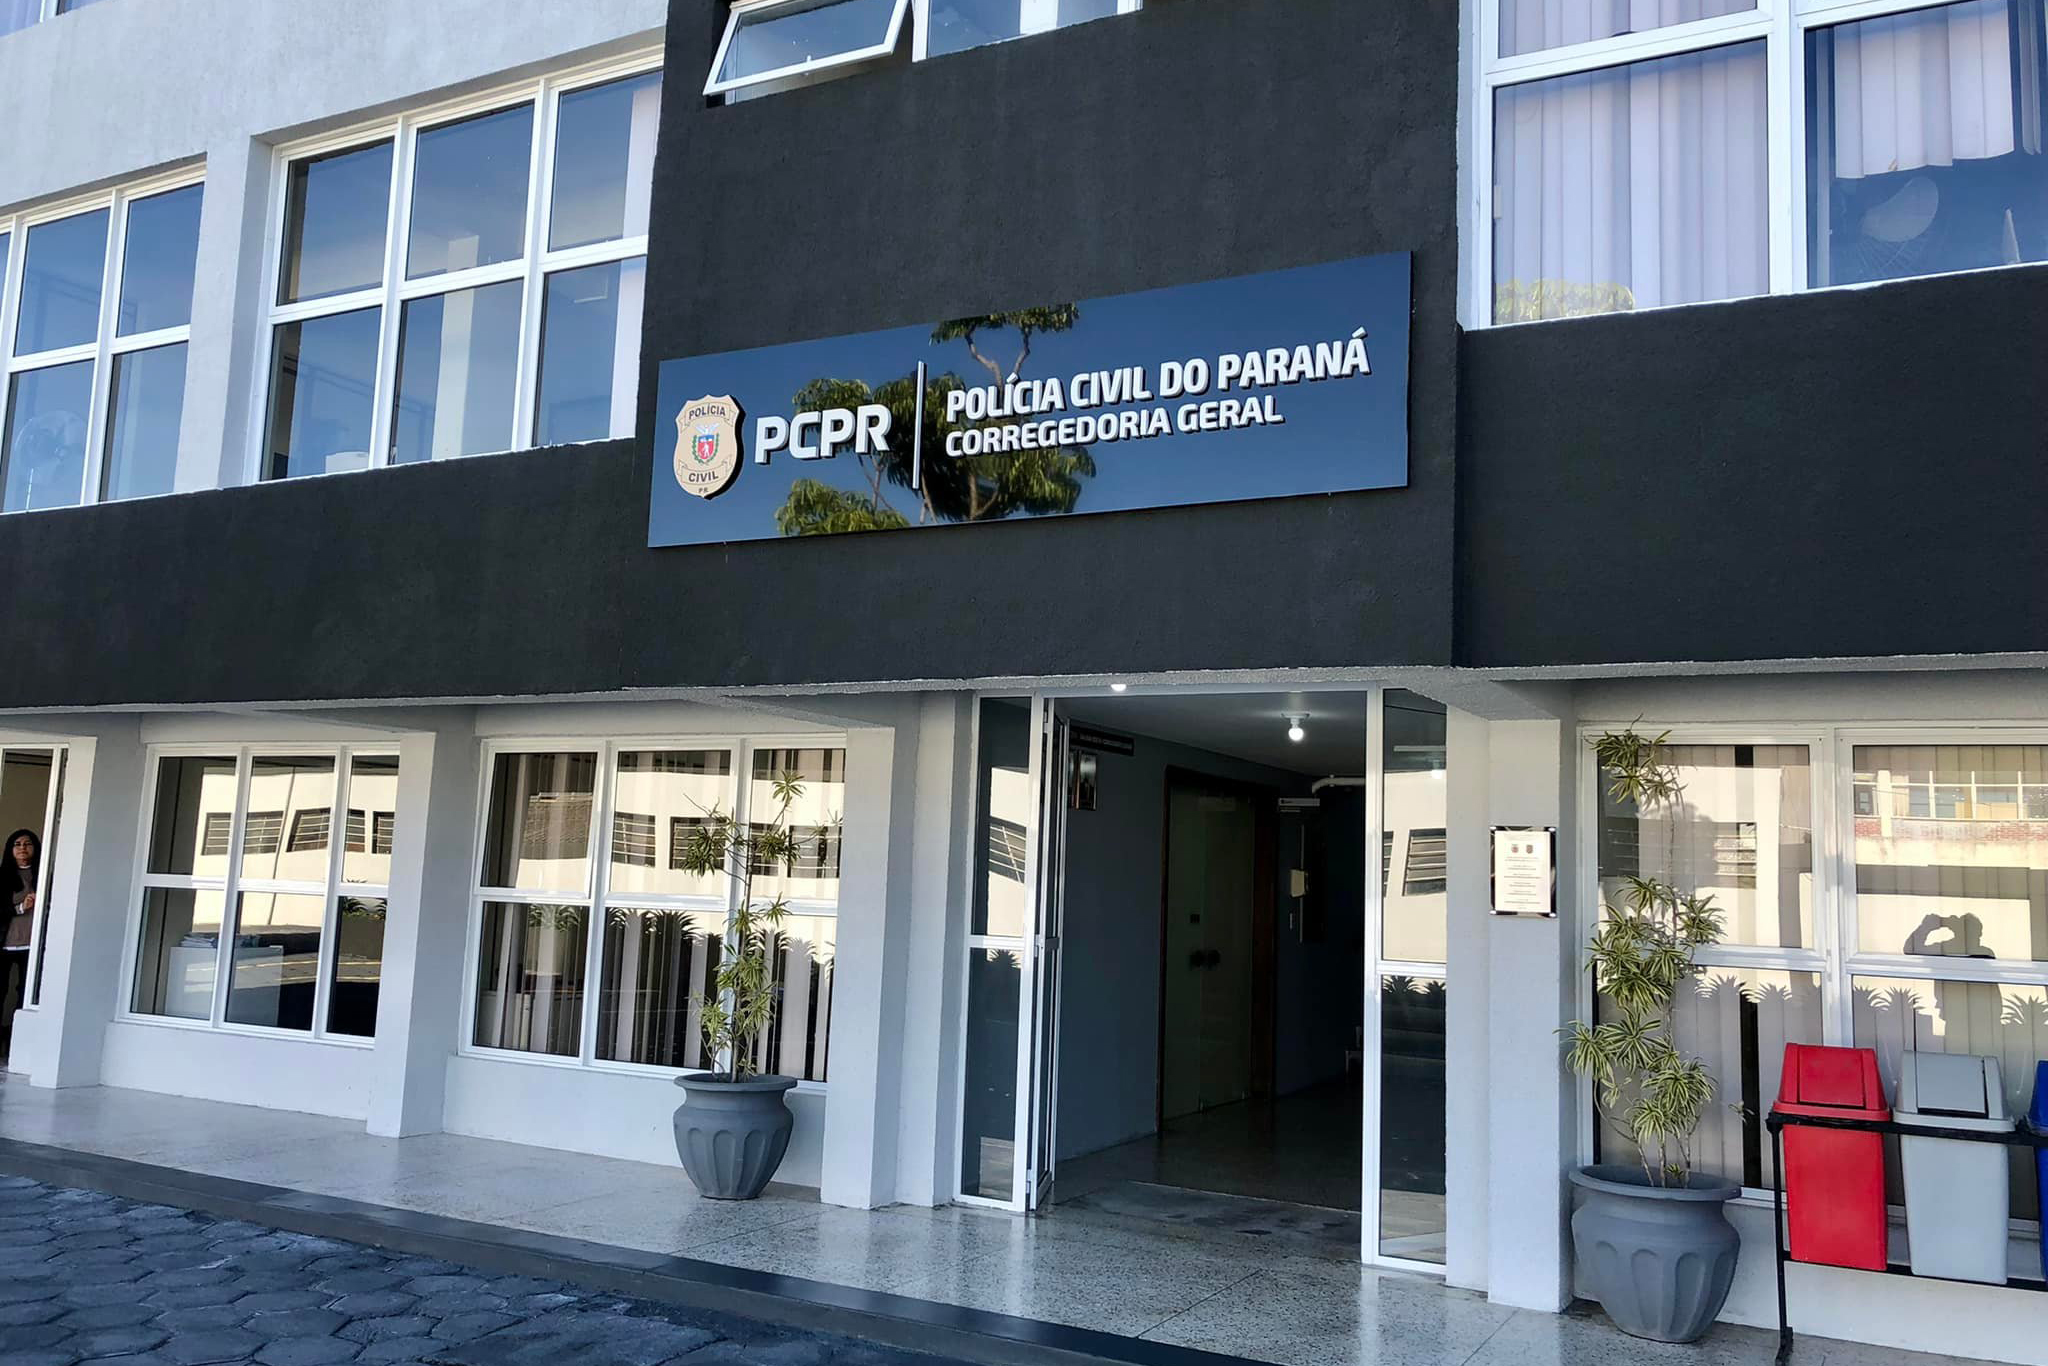 Polícia Civil finaliza revitalização do prédio da Corregedoria Geral, em Curitiba